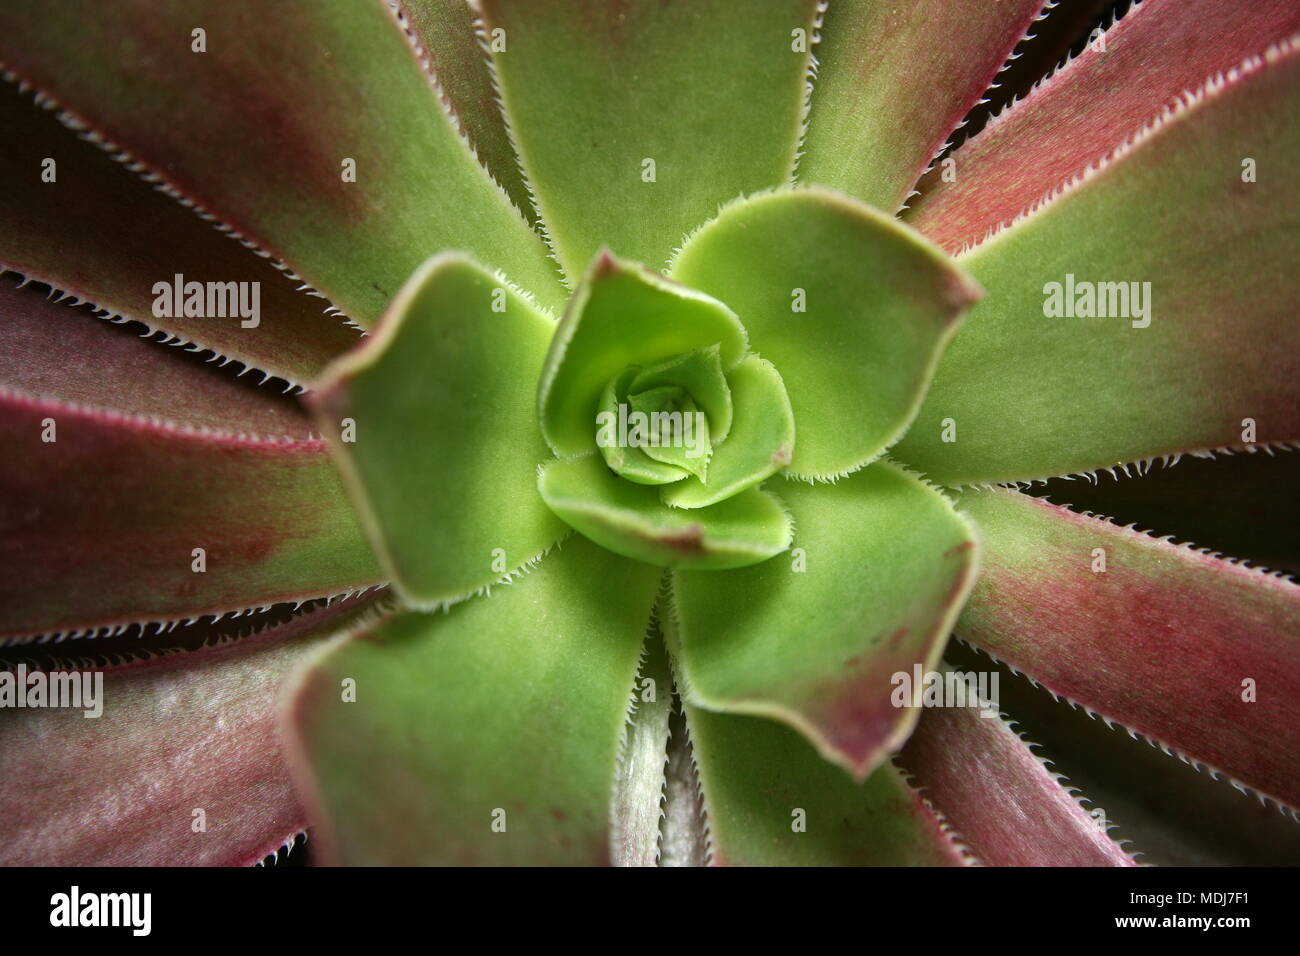 Aeonium arboreum center close-up Stock Photo